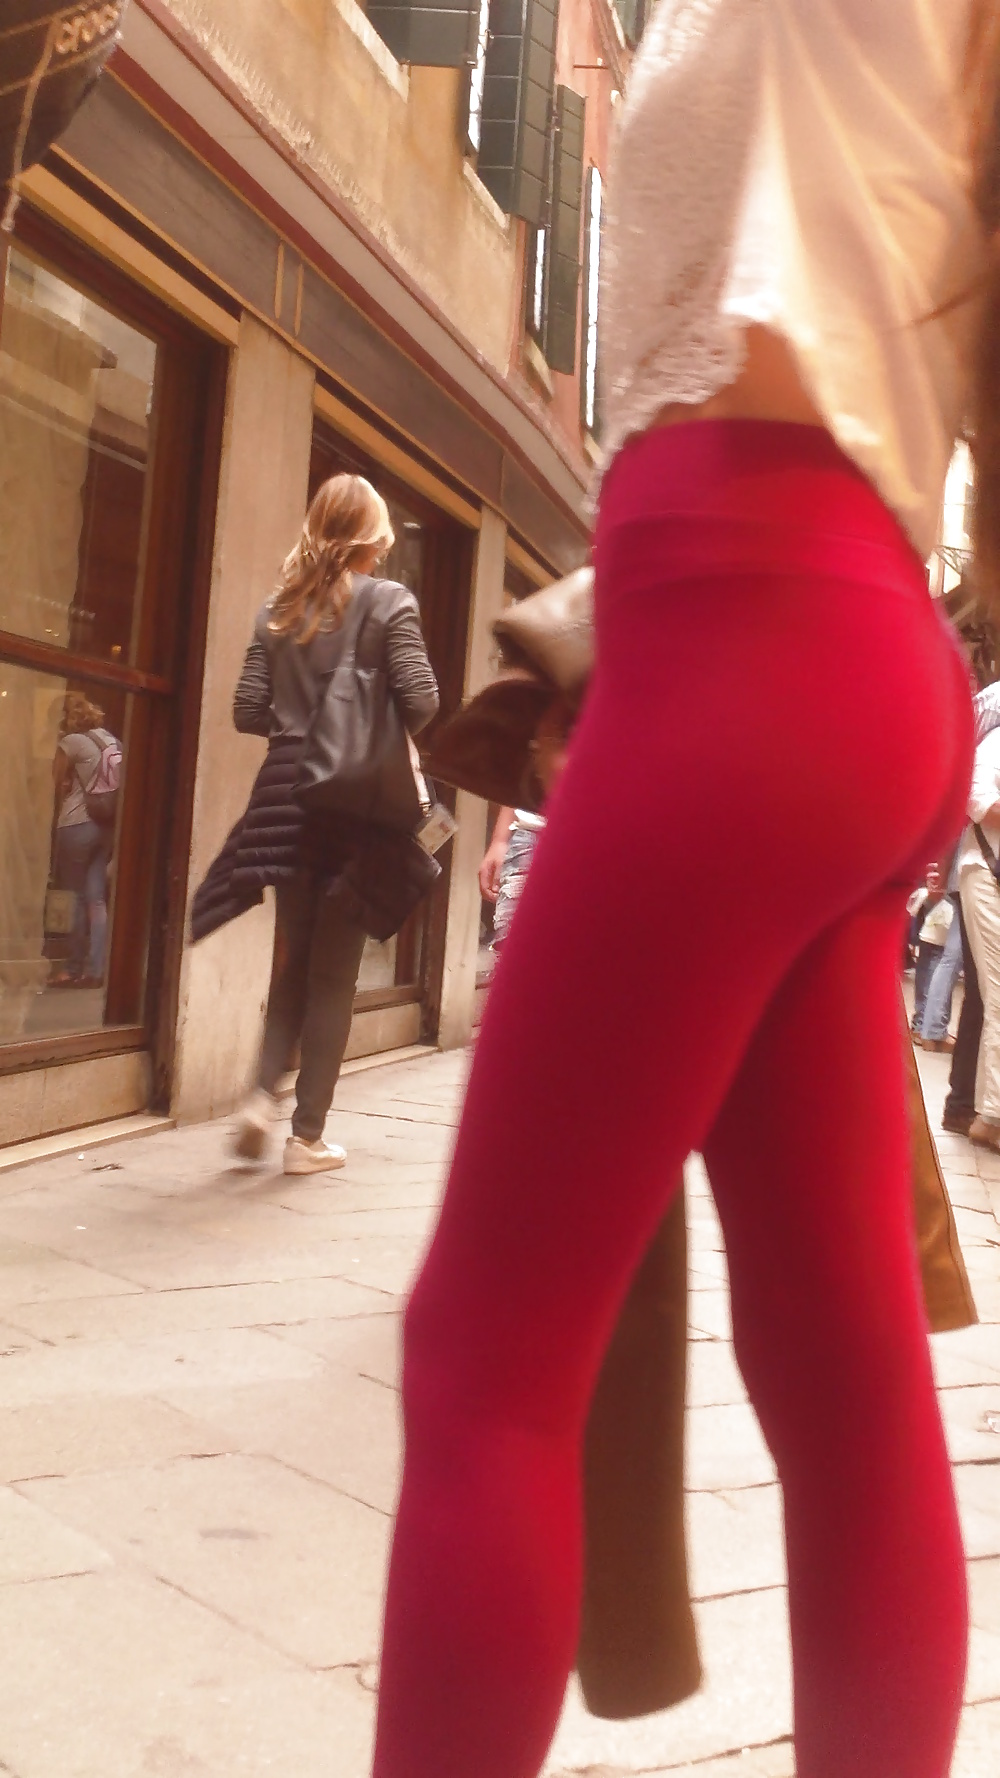 Popular teen girls ass & butt in jeans Part 6 #32010140